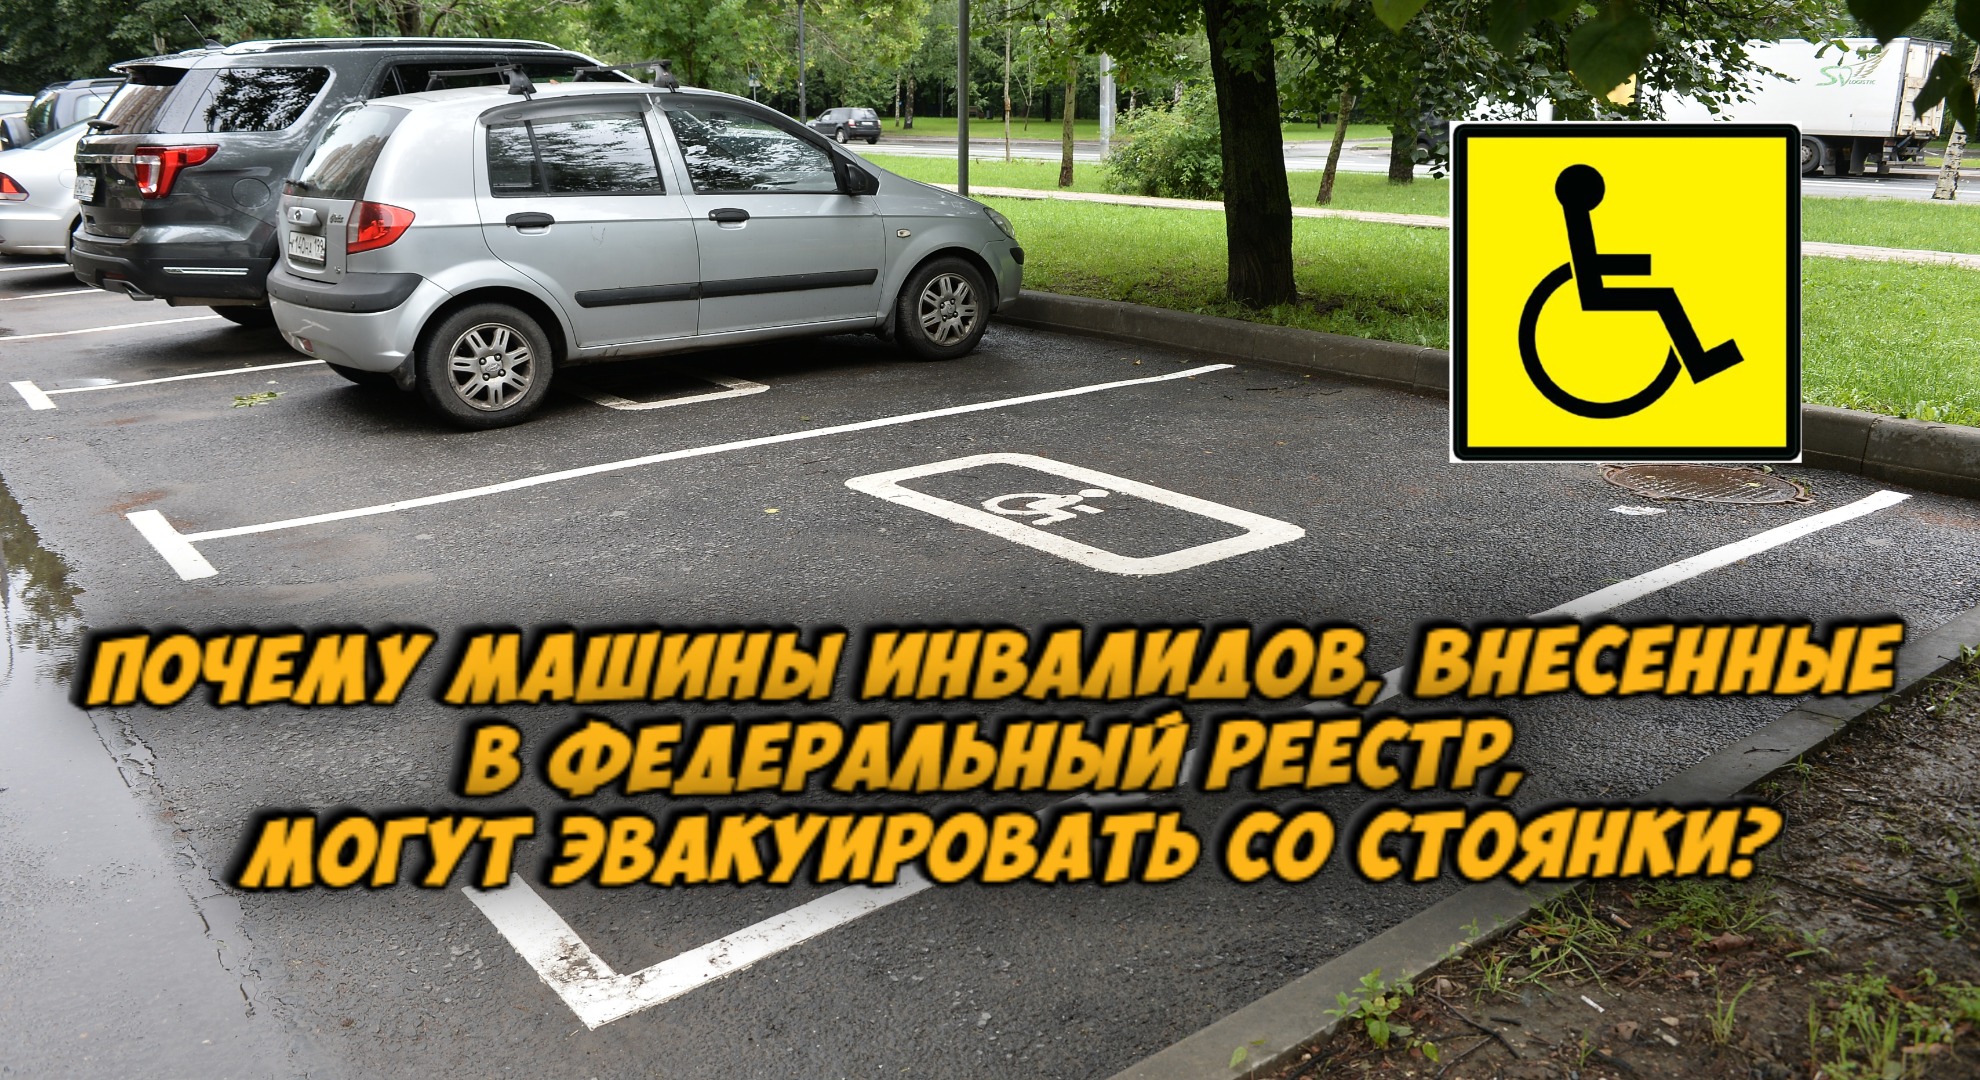 Инвалиду можно парковаться на платной парковке. Знак парковка для инвалидов. Парковочные места для автомобилей инвалидам. Внести авто для инвалидов. Место для парковки автомобиля инвалида знак.